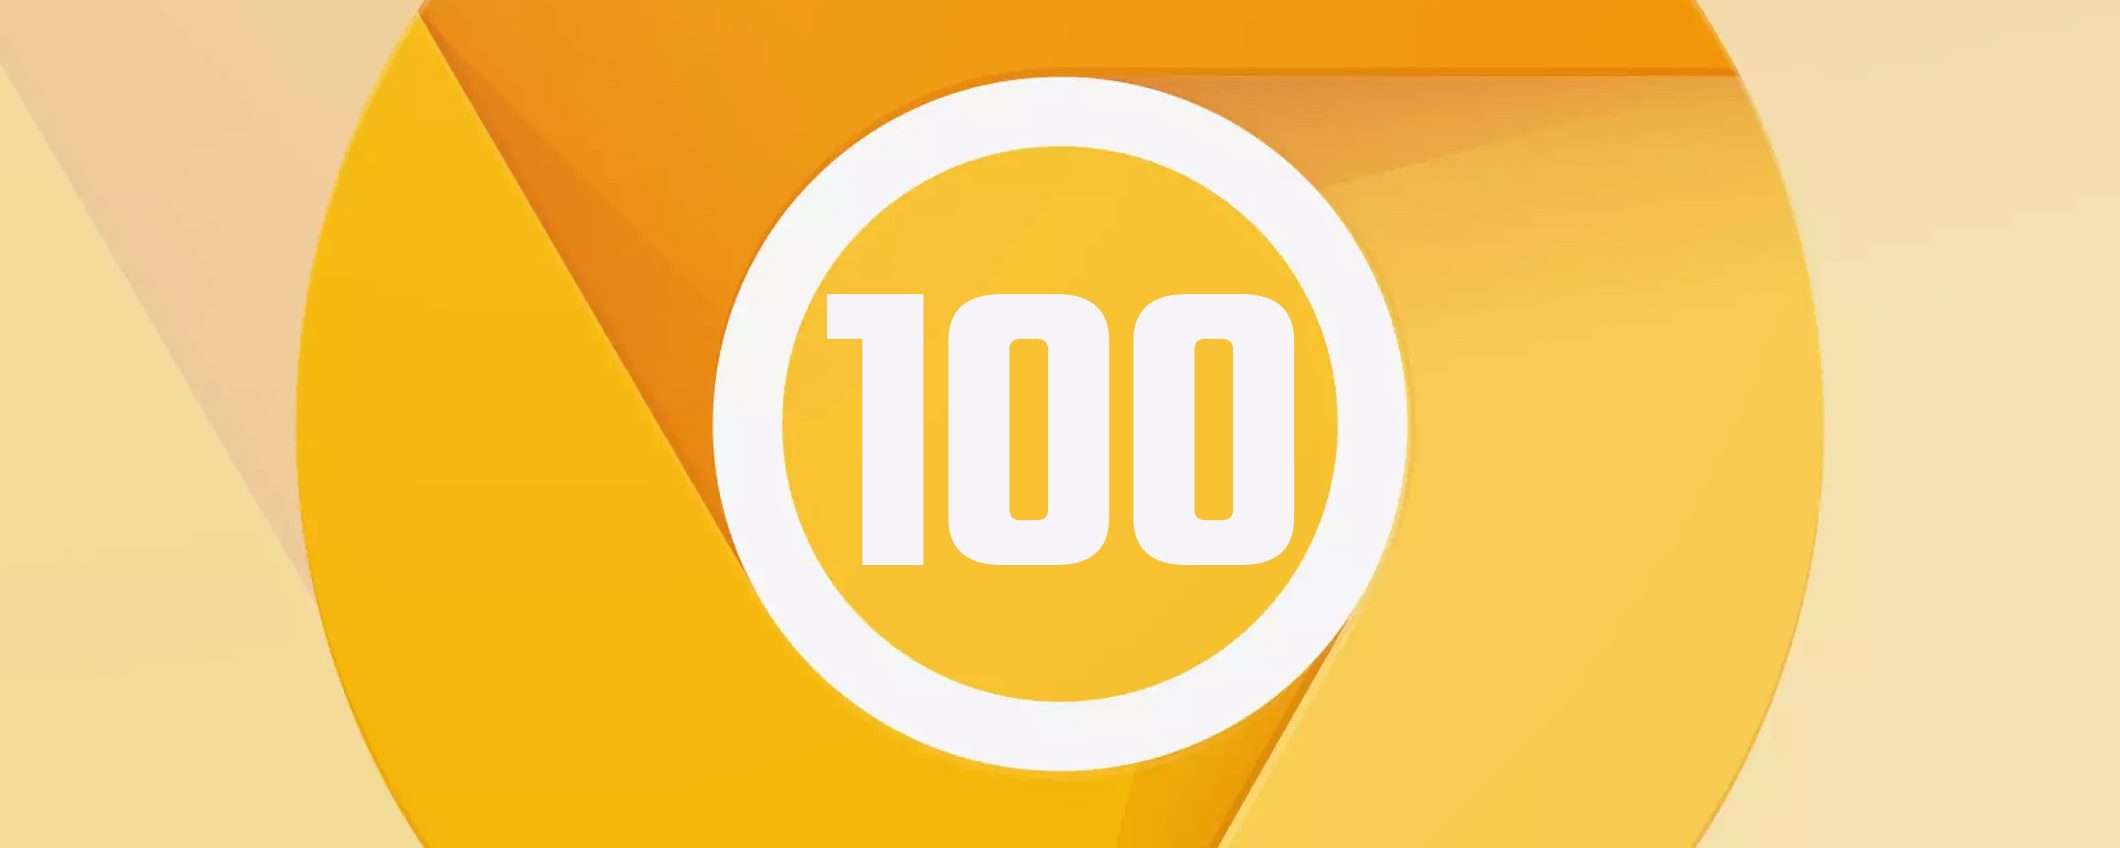 Chome fa 100 con la nuova release Canary